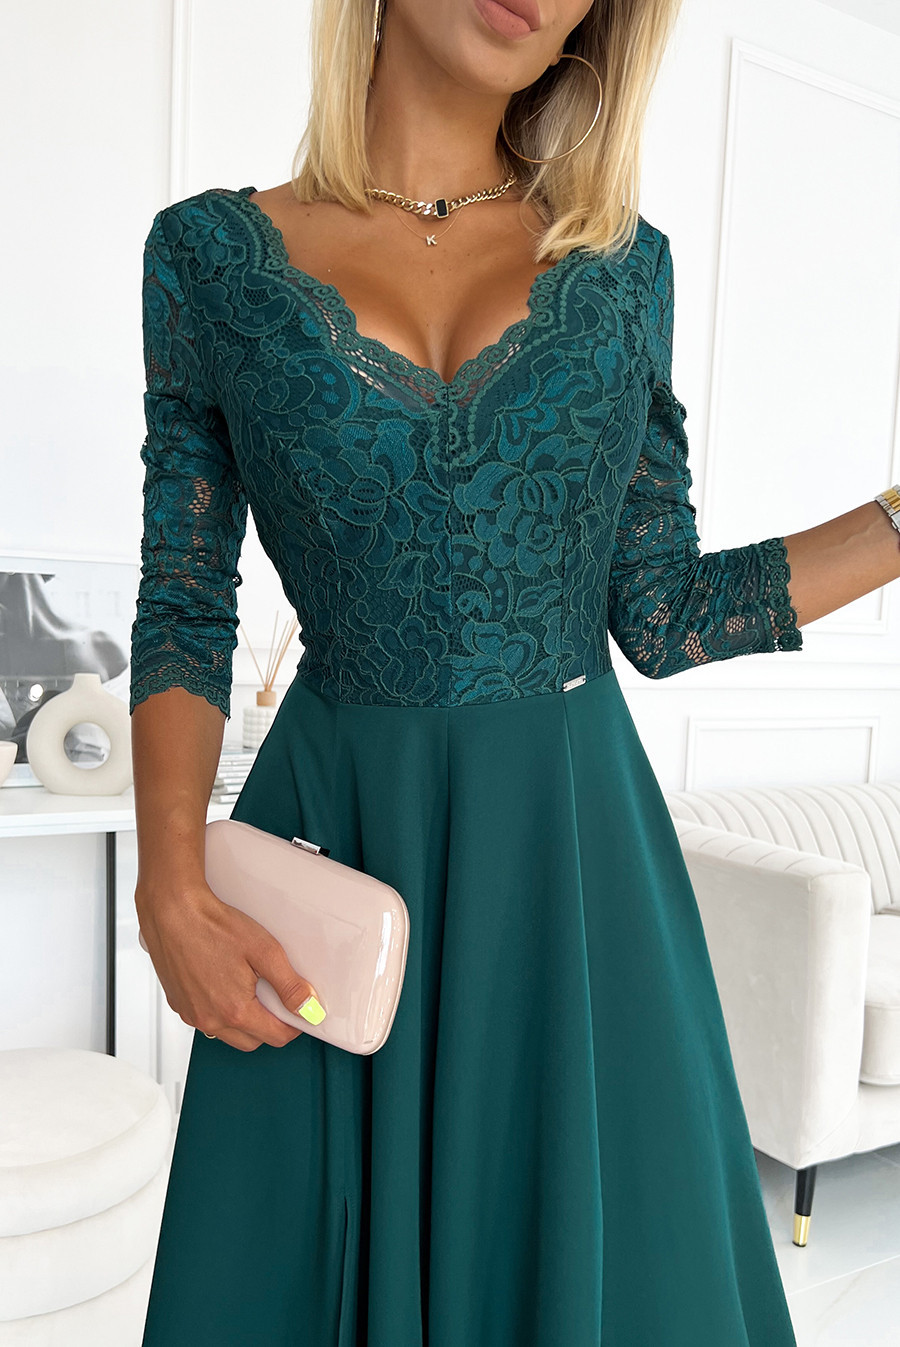 AMBER - Elegantní dlouhé dámské krajkové šaty v lahvově zelené barvě s výstřihem 309-5 M